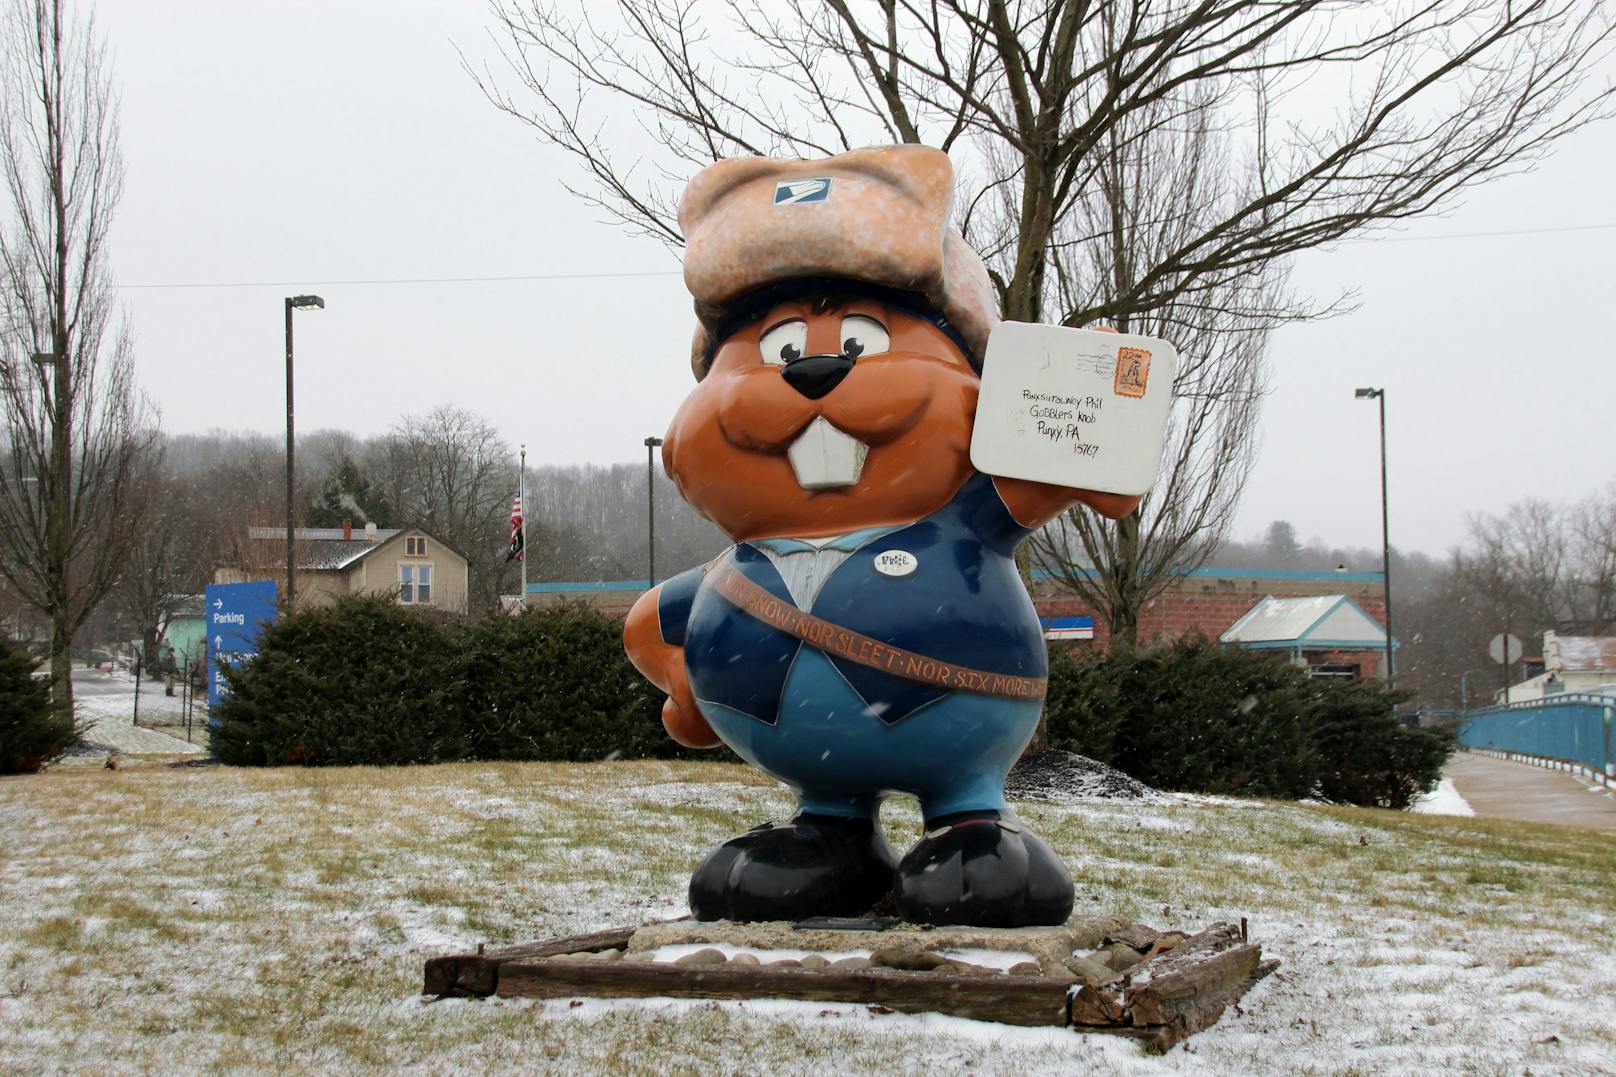 Der alljährliche "Groundhog day" in Punxsutawney (Pennsylvania) findet immer am 02. Februar statt. 